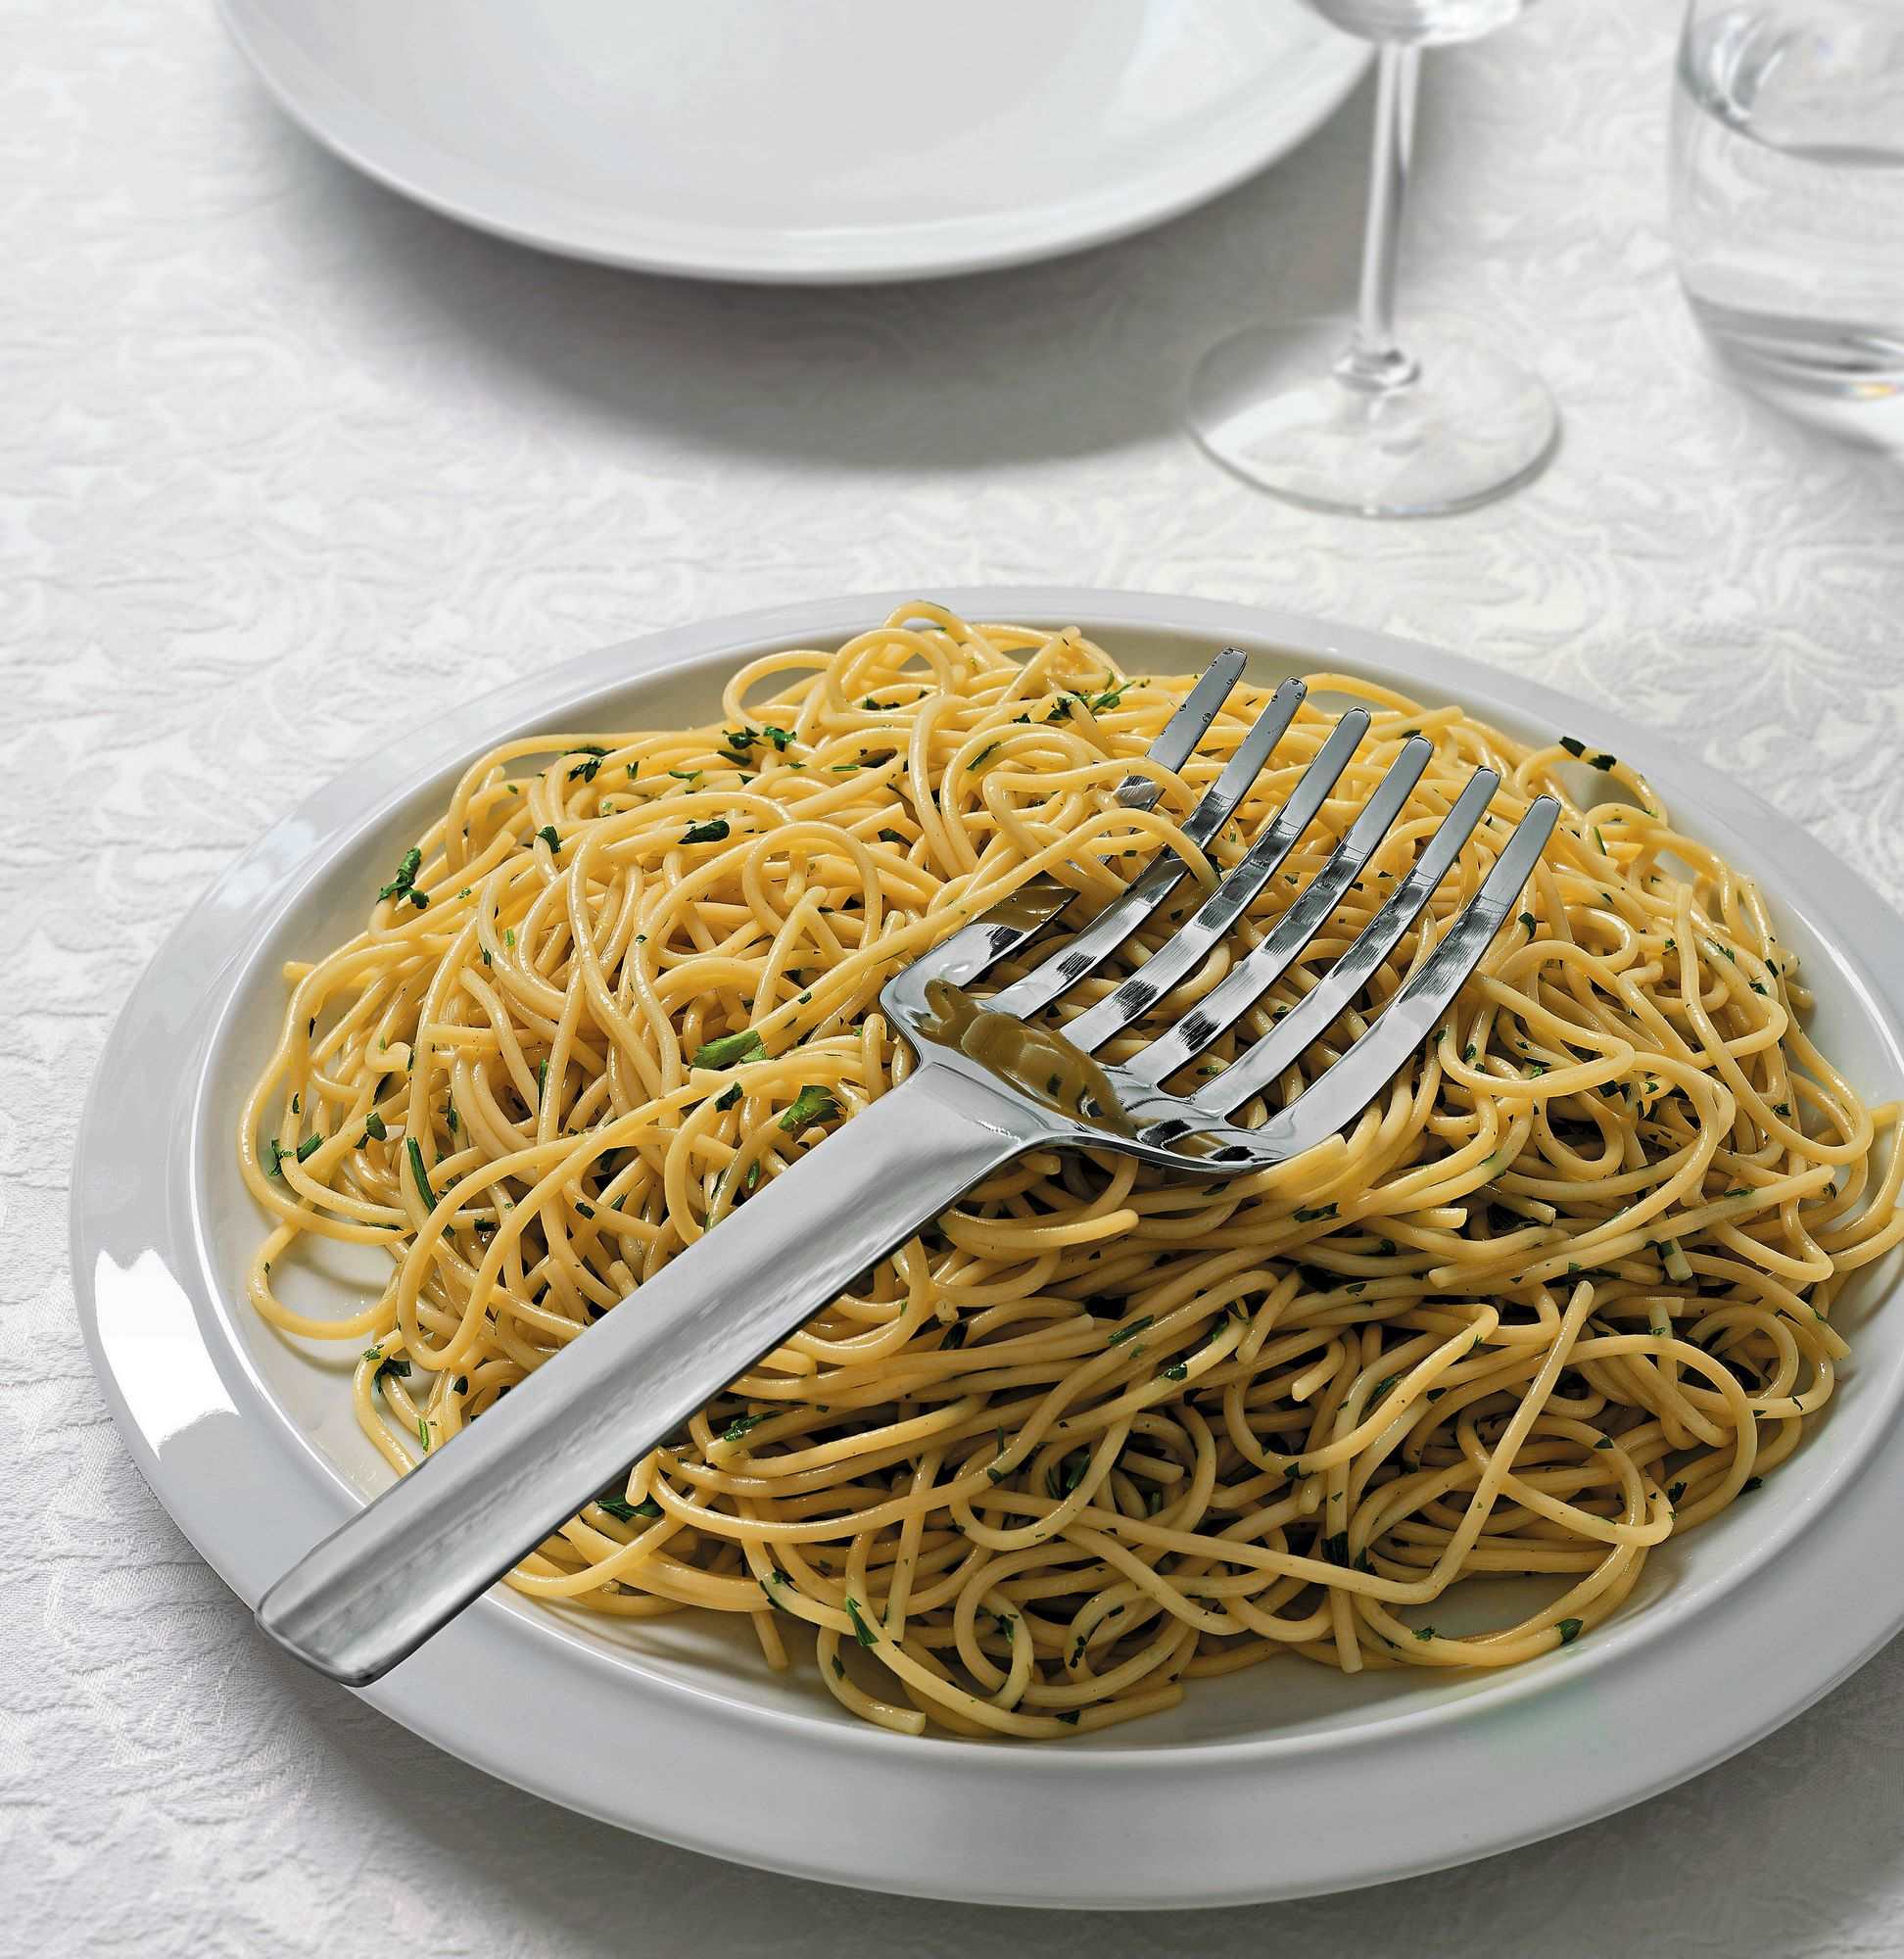 KL13 Spaghetti serving fork Tibidabo